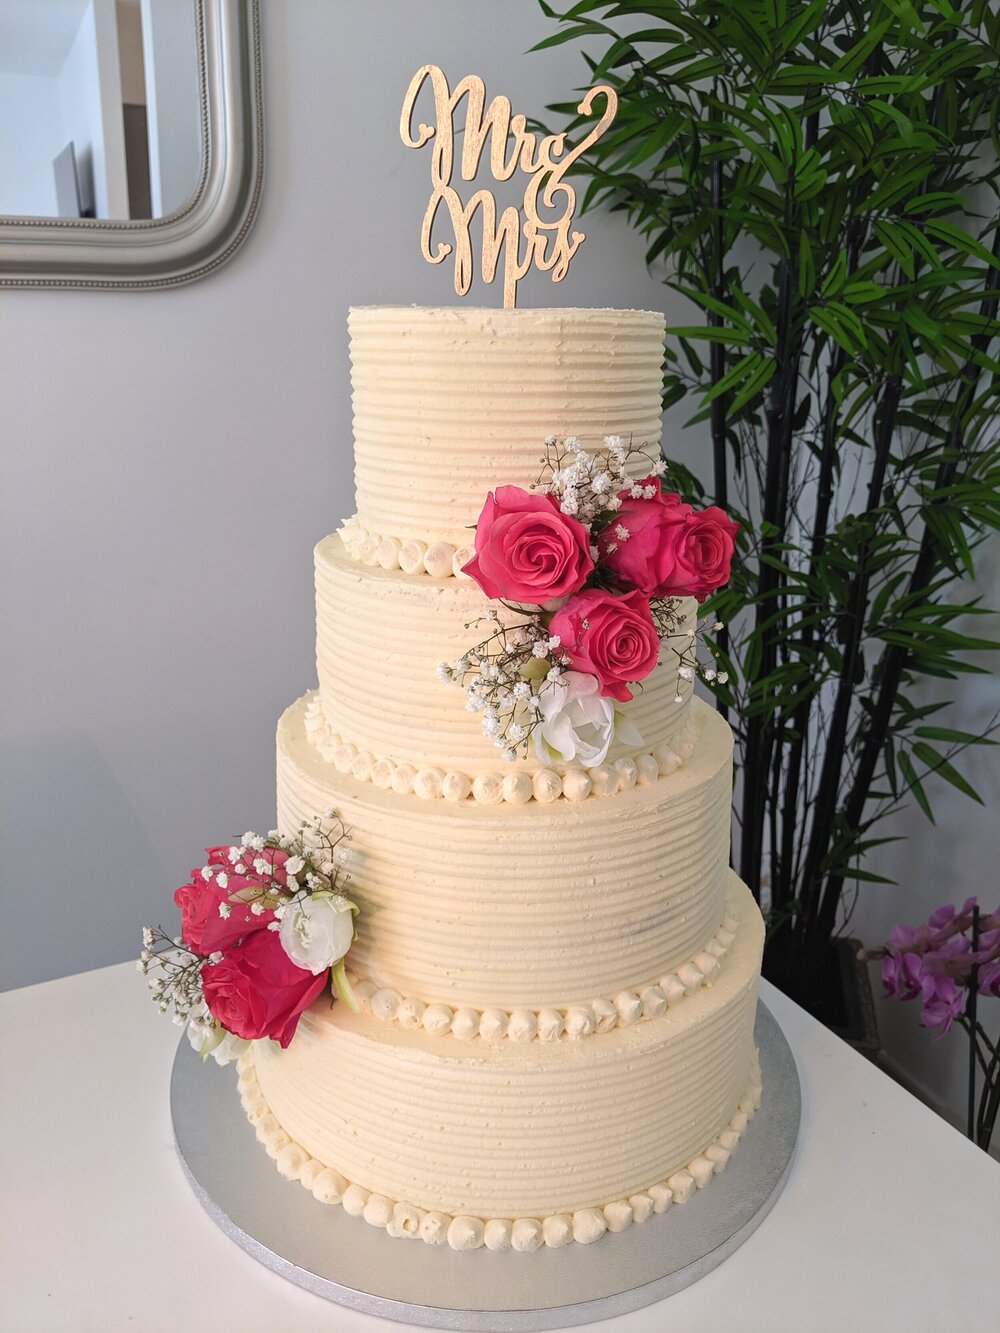 Oh le joli wedding cake gris et rose ! - Do You Cake?